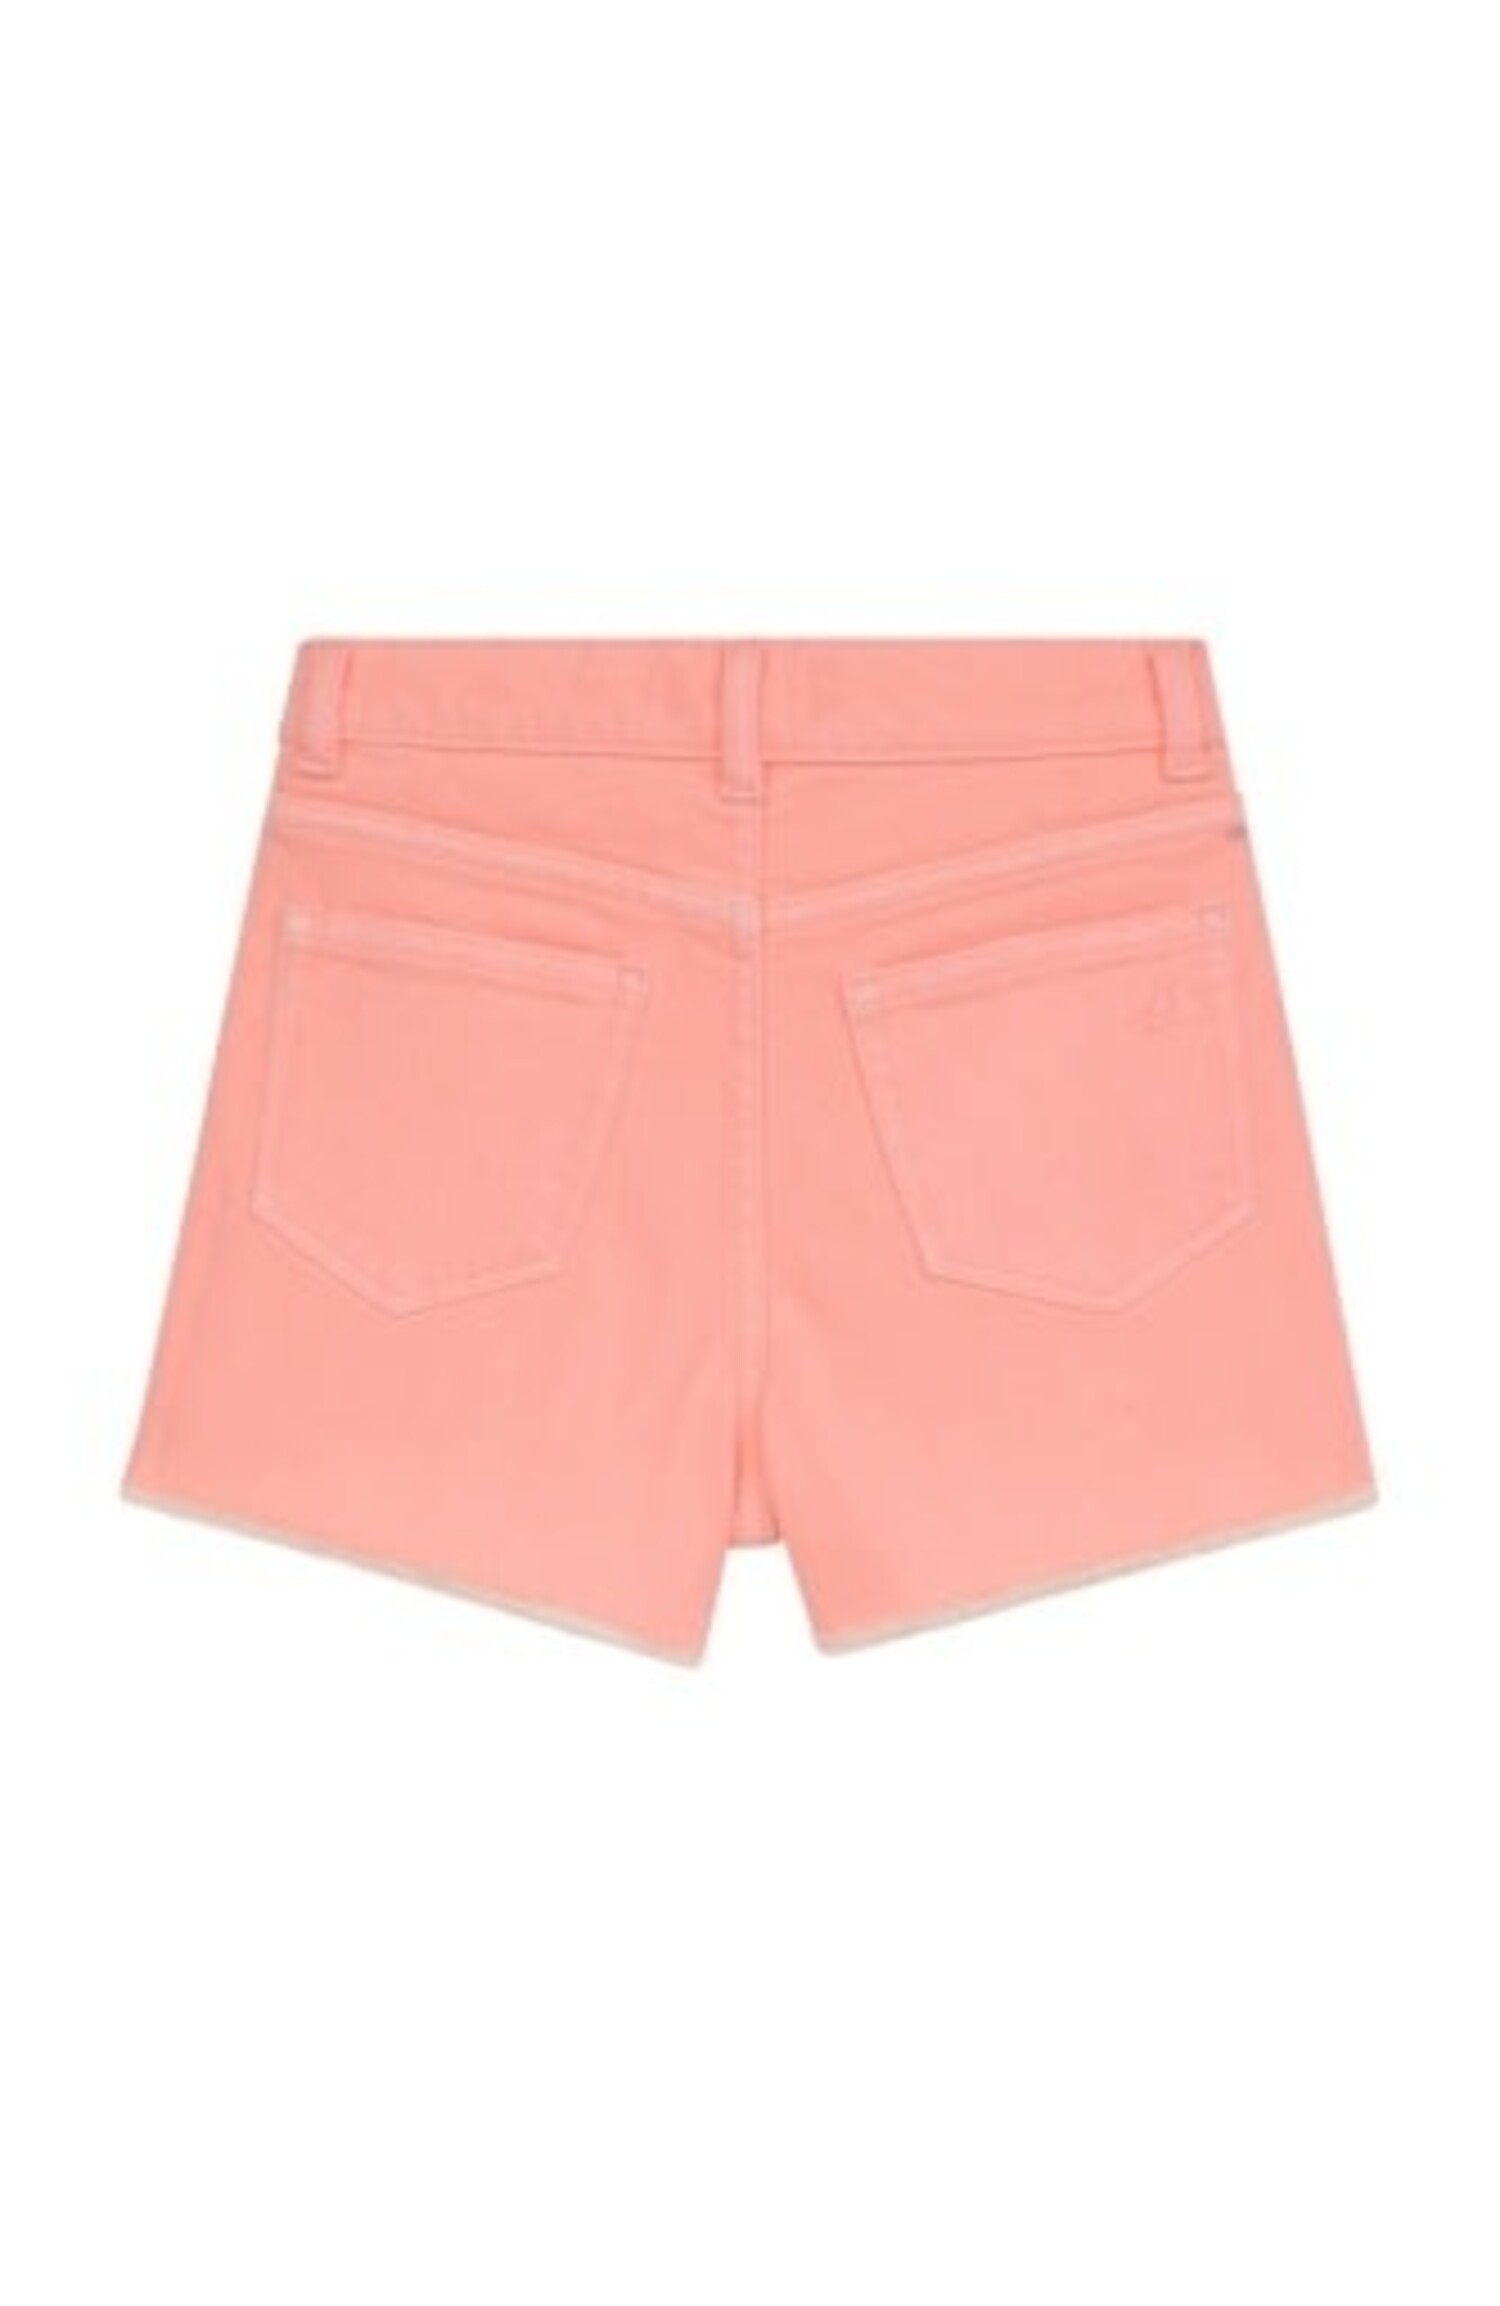 Pink Shorts, Hot Pink & Coral Shorts